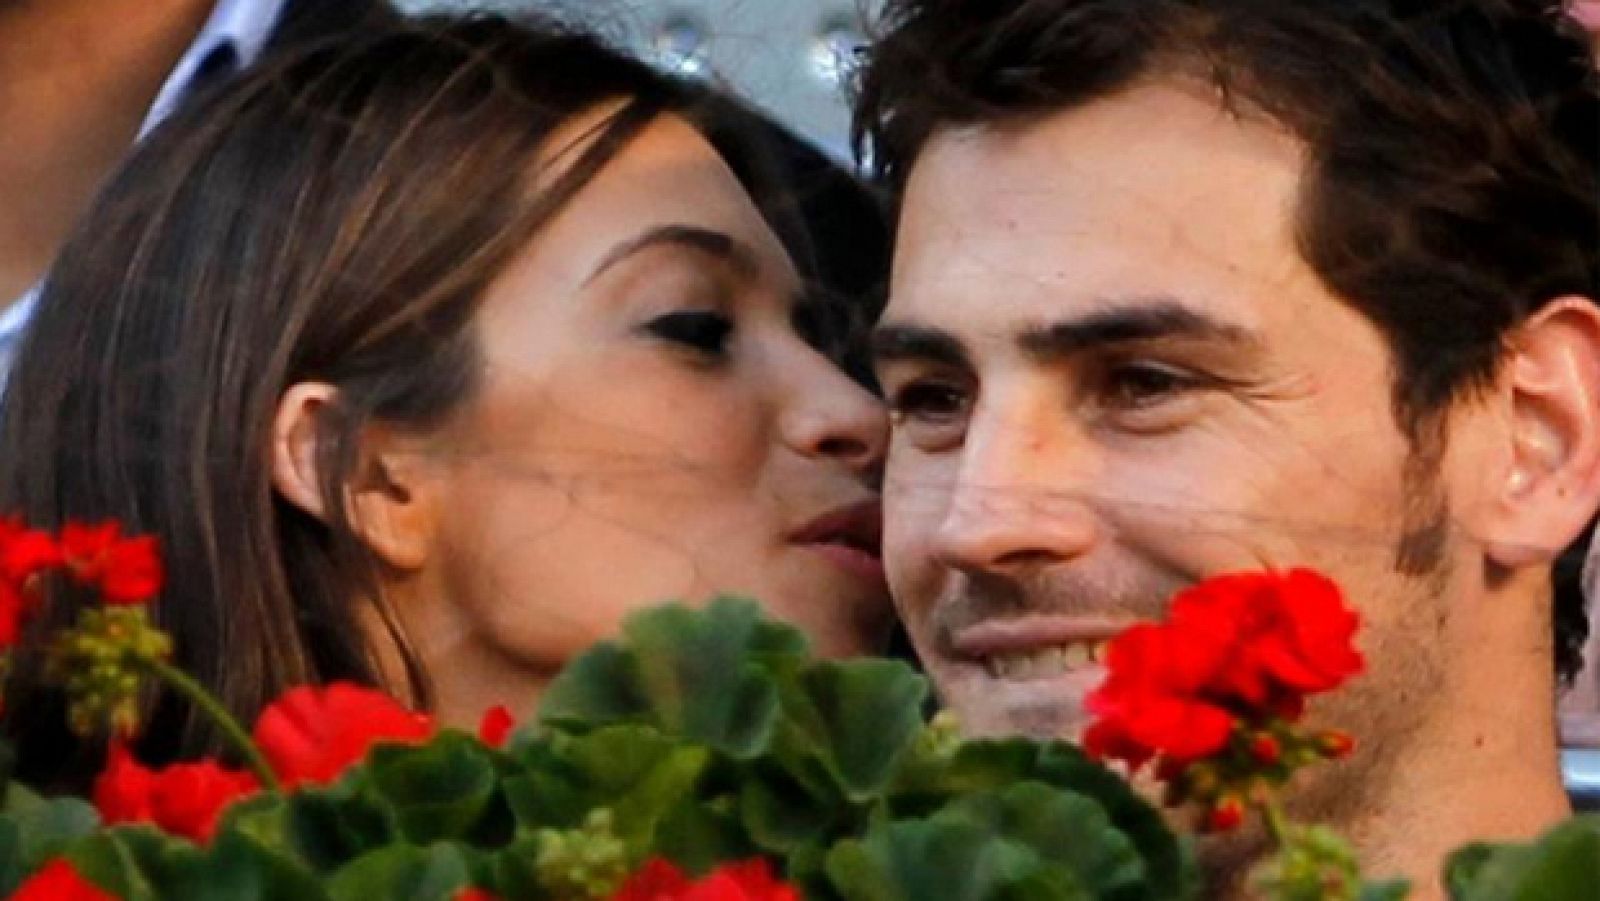 La mañana de la 1 - Iker Casillas y Sara Carbonero serán padres